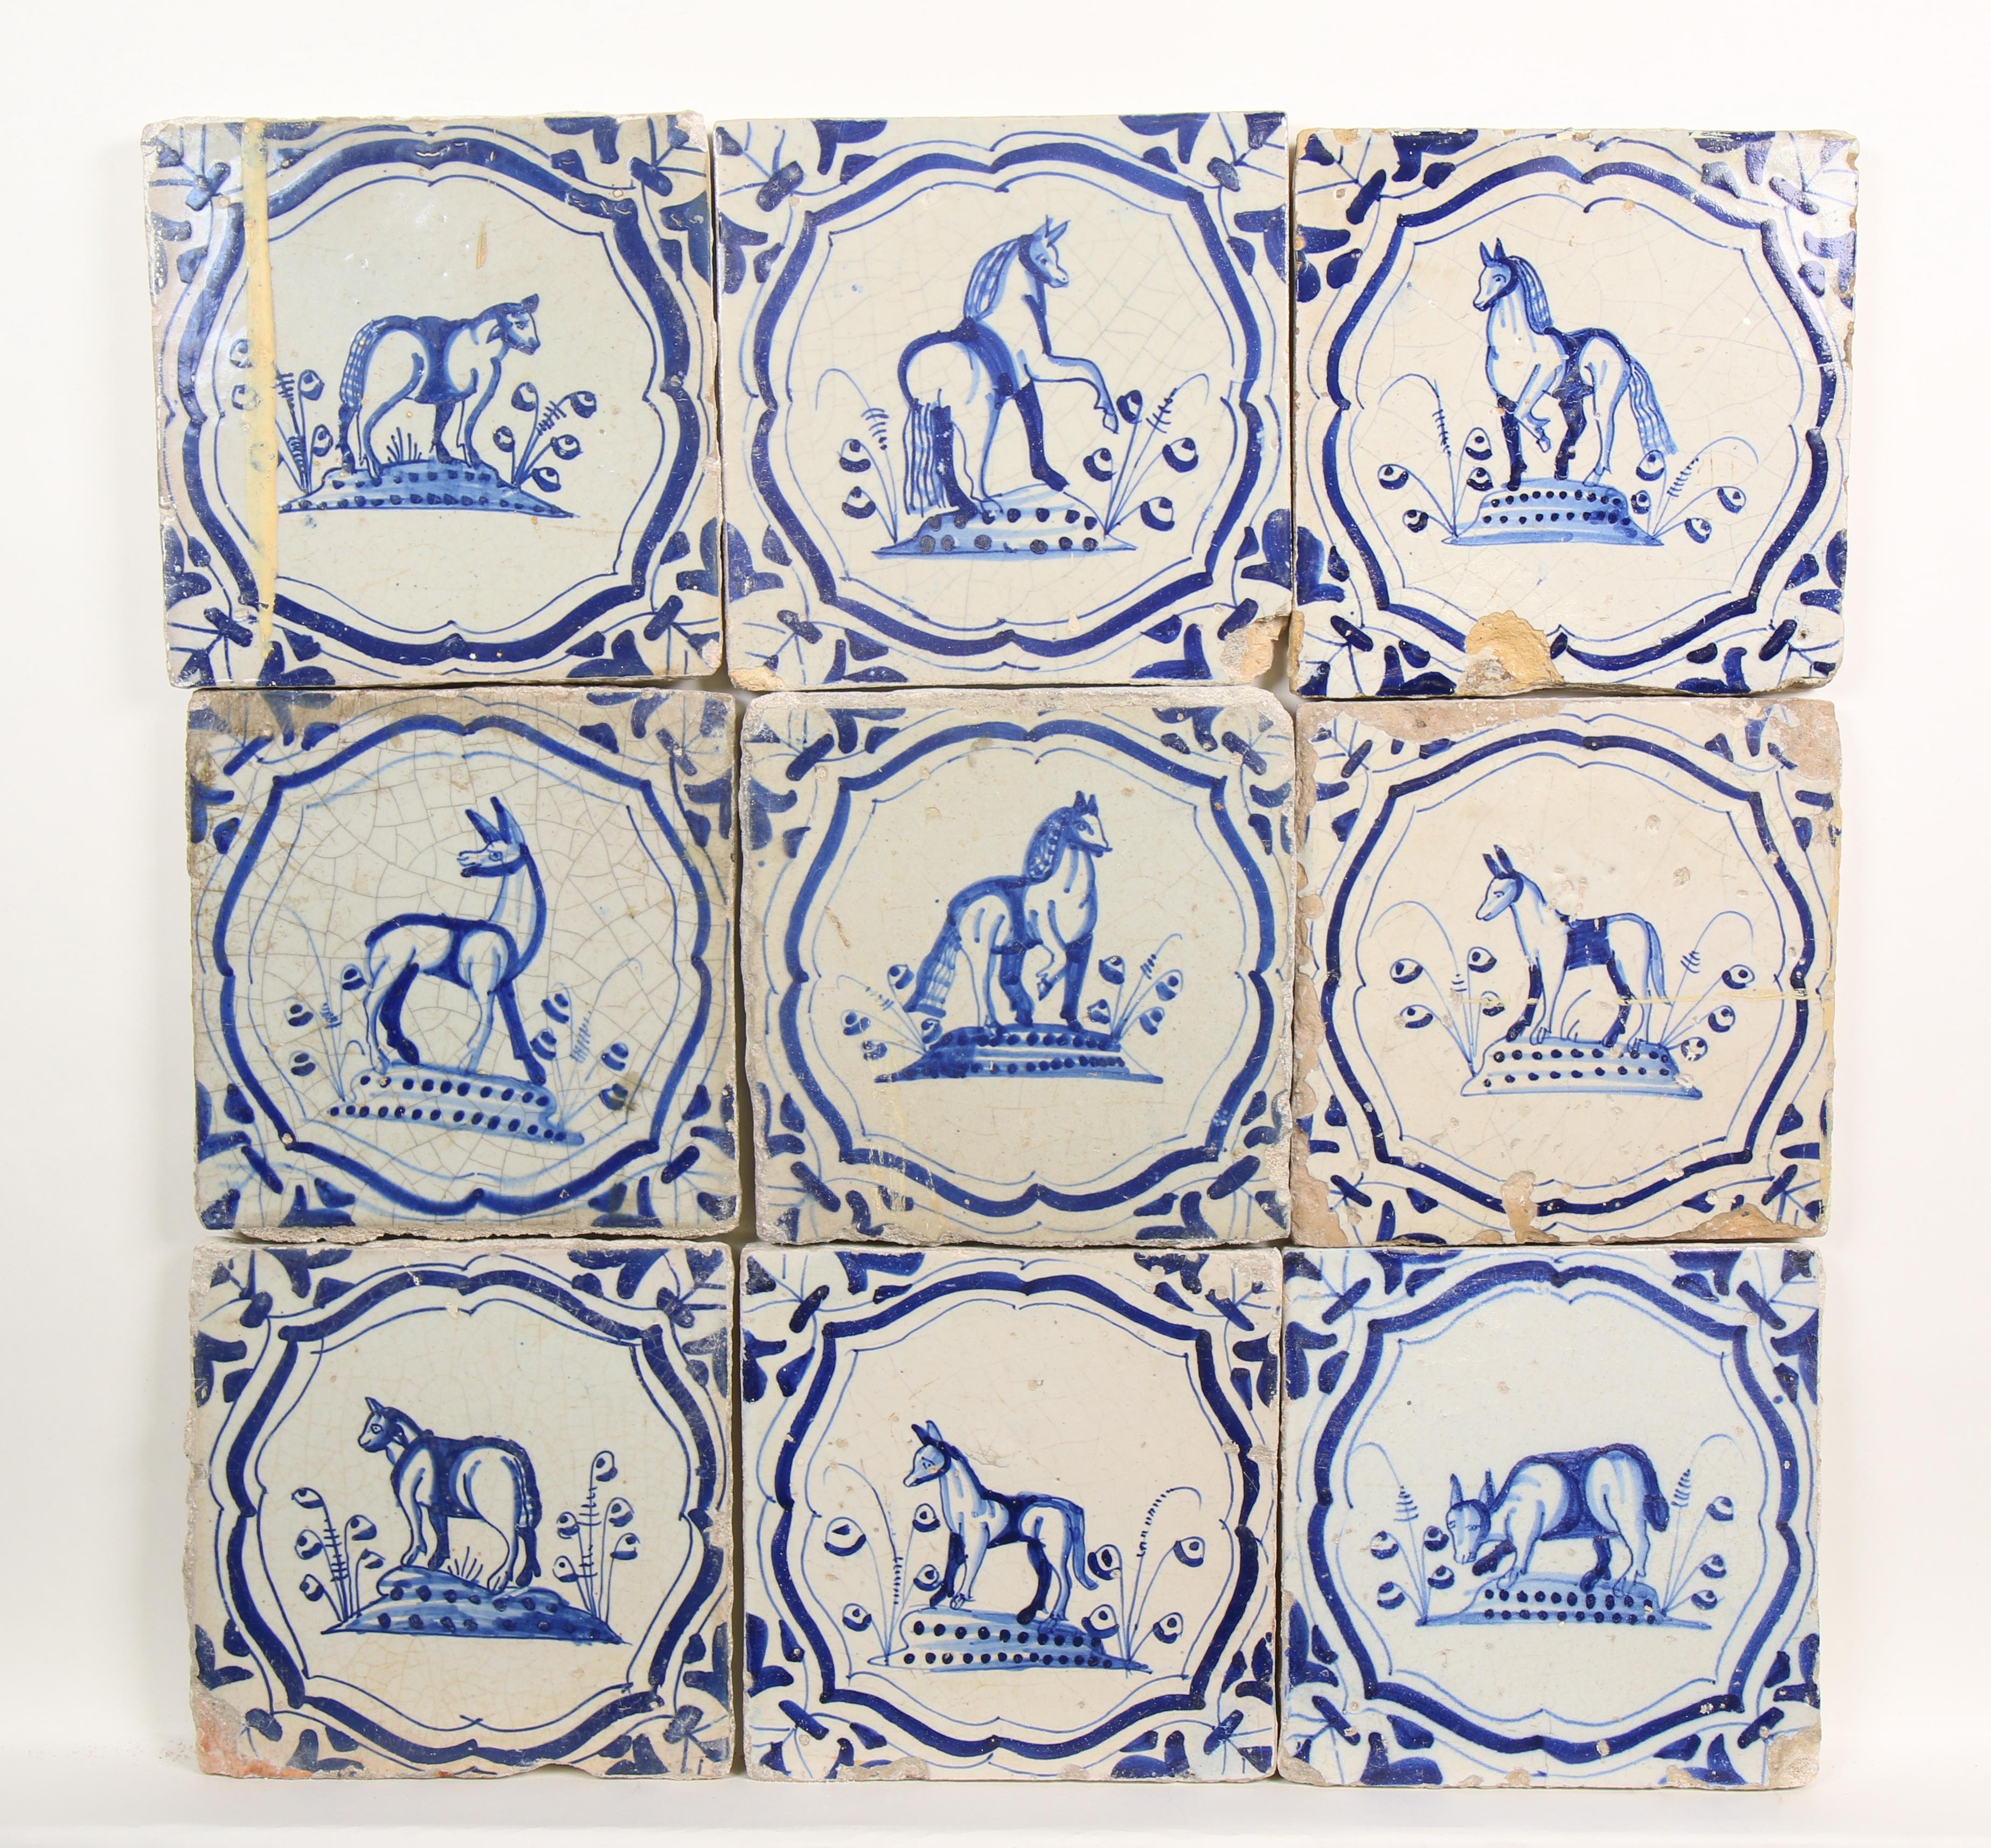 Negen blauw aardewerk dierendecor tegels, ca. 1625-1650;